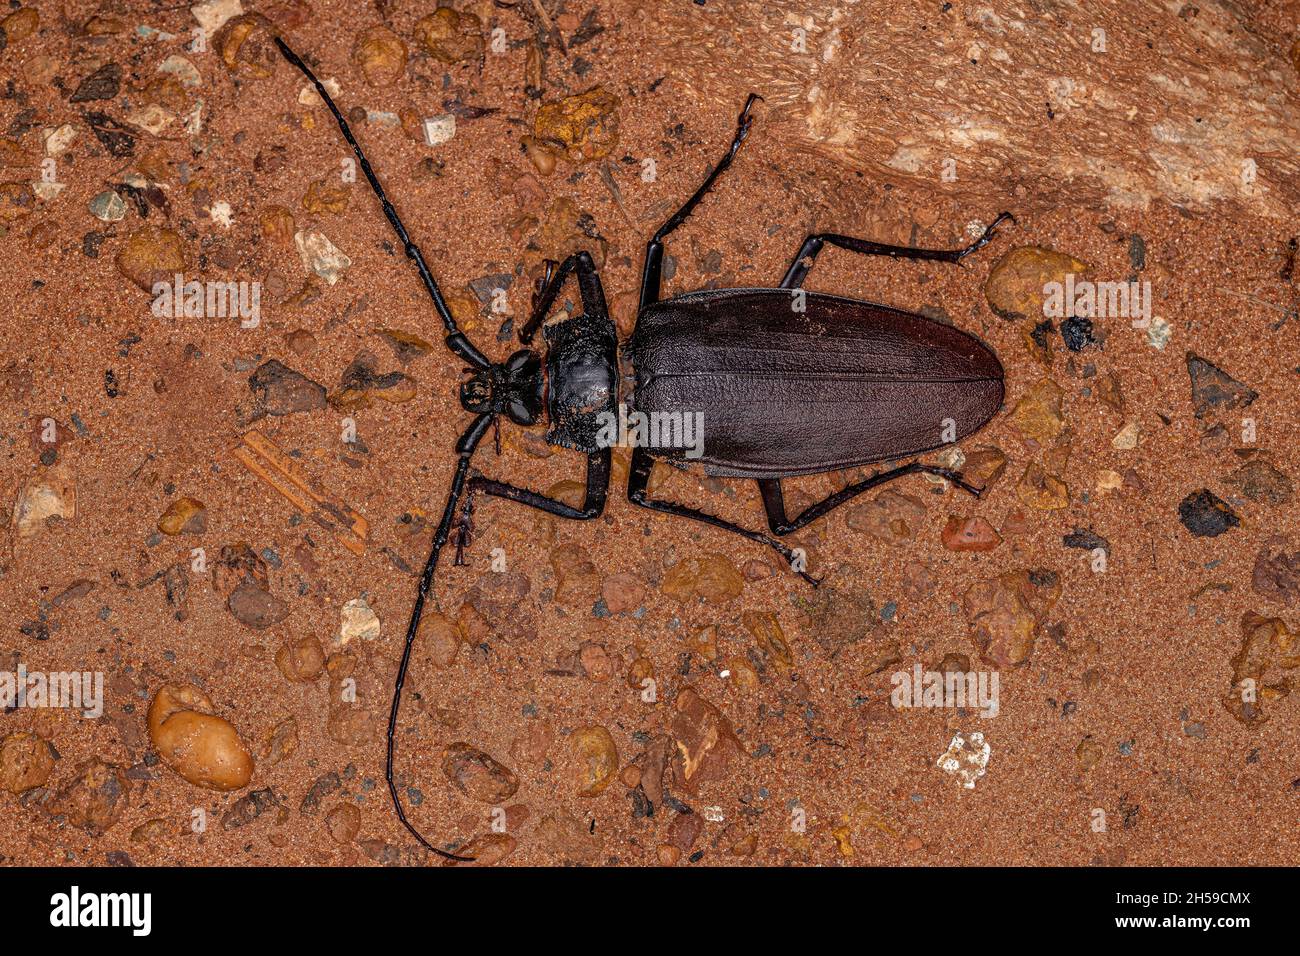 Adult Giant Prionid Beetle of the species Ctenoscelis coeus Stock Photo